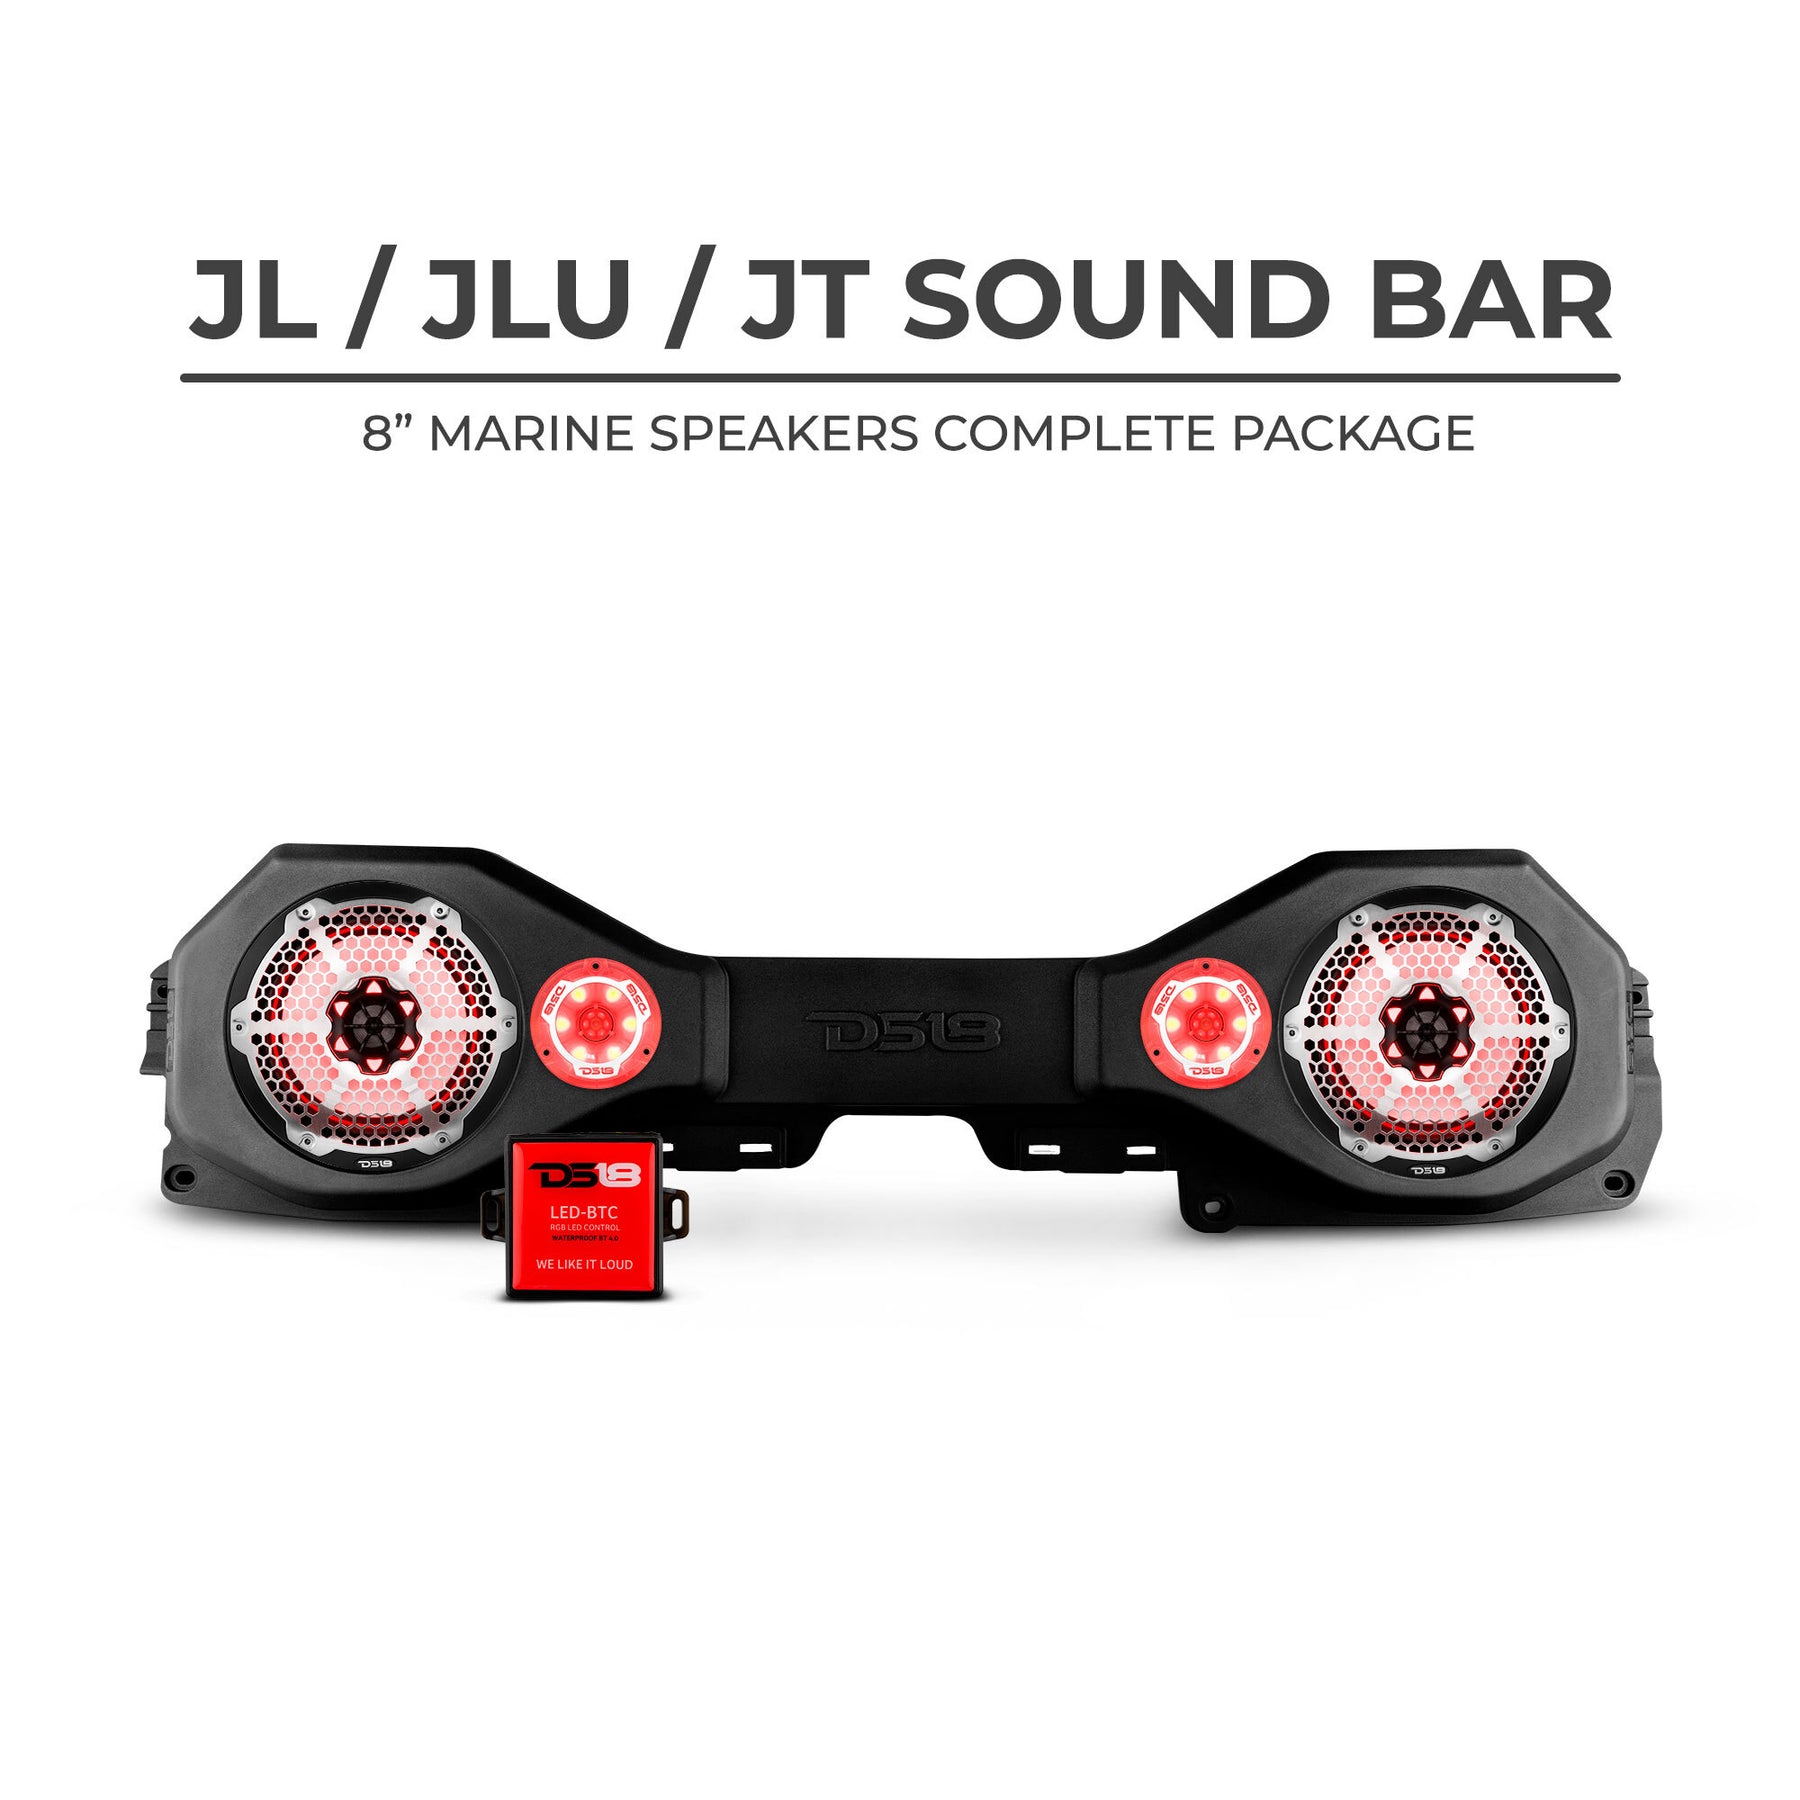 DS18 Jeep JL/JLU/JT Plug & Play Sound Bar Package